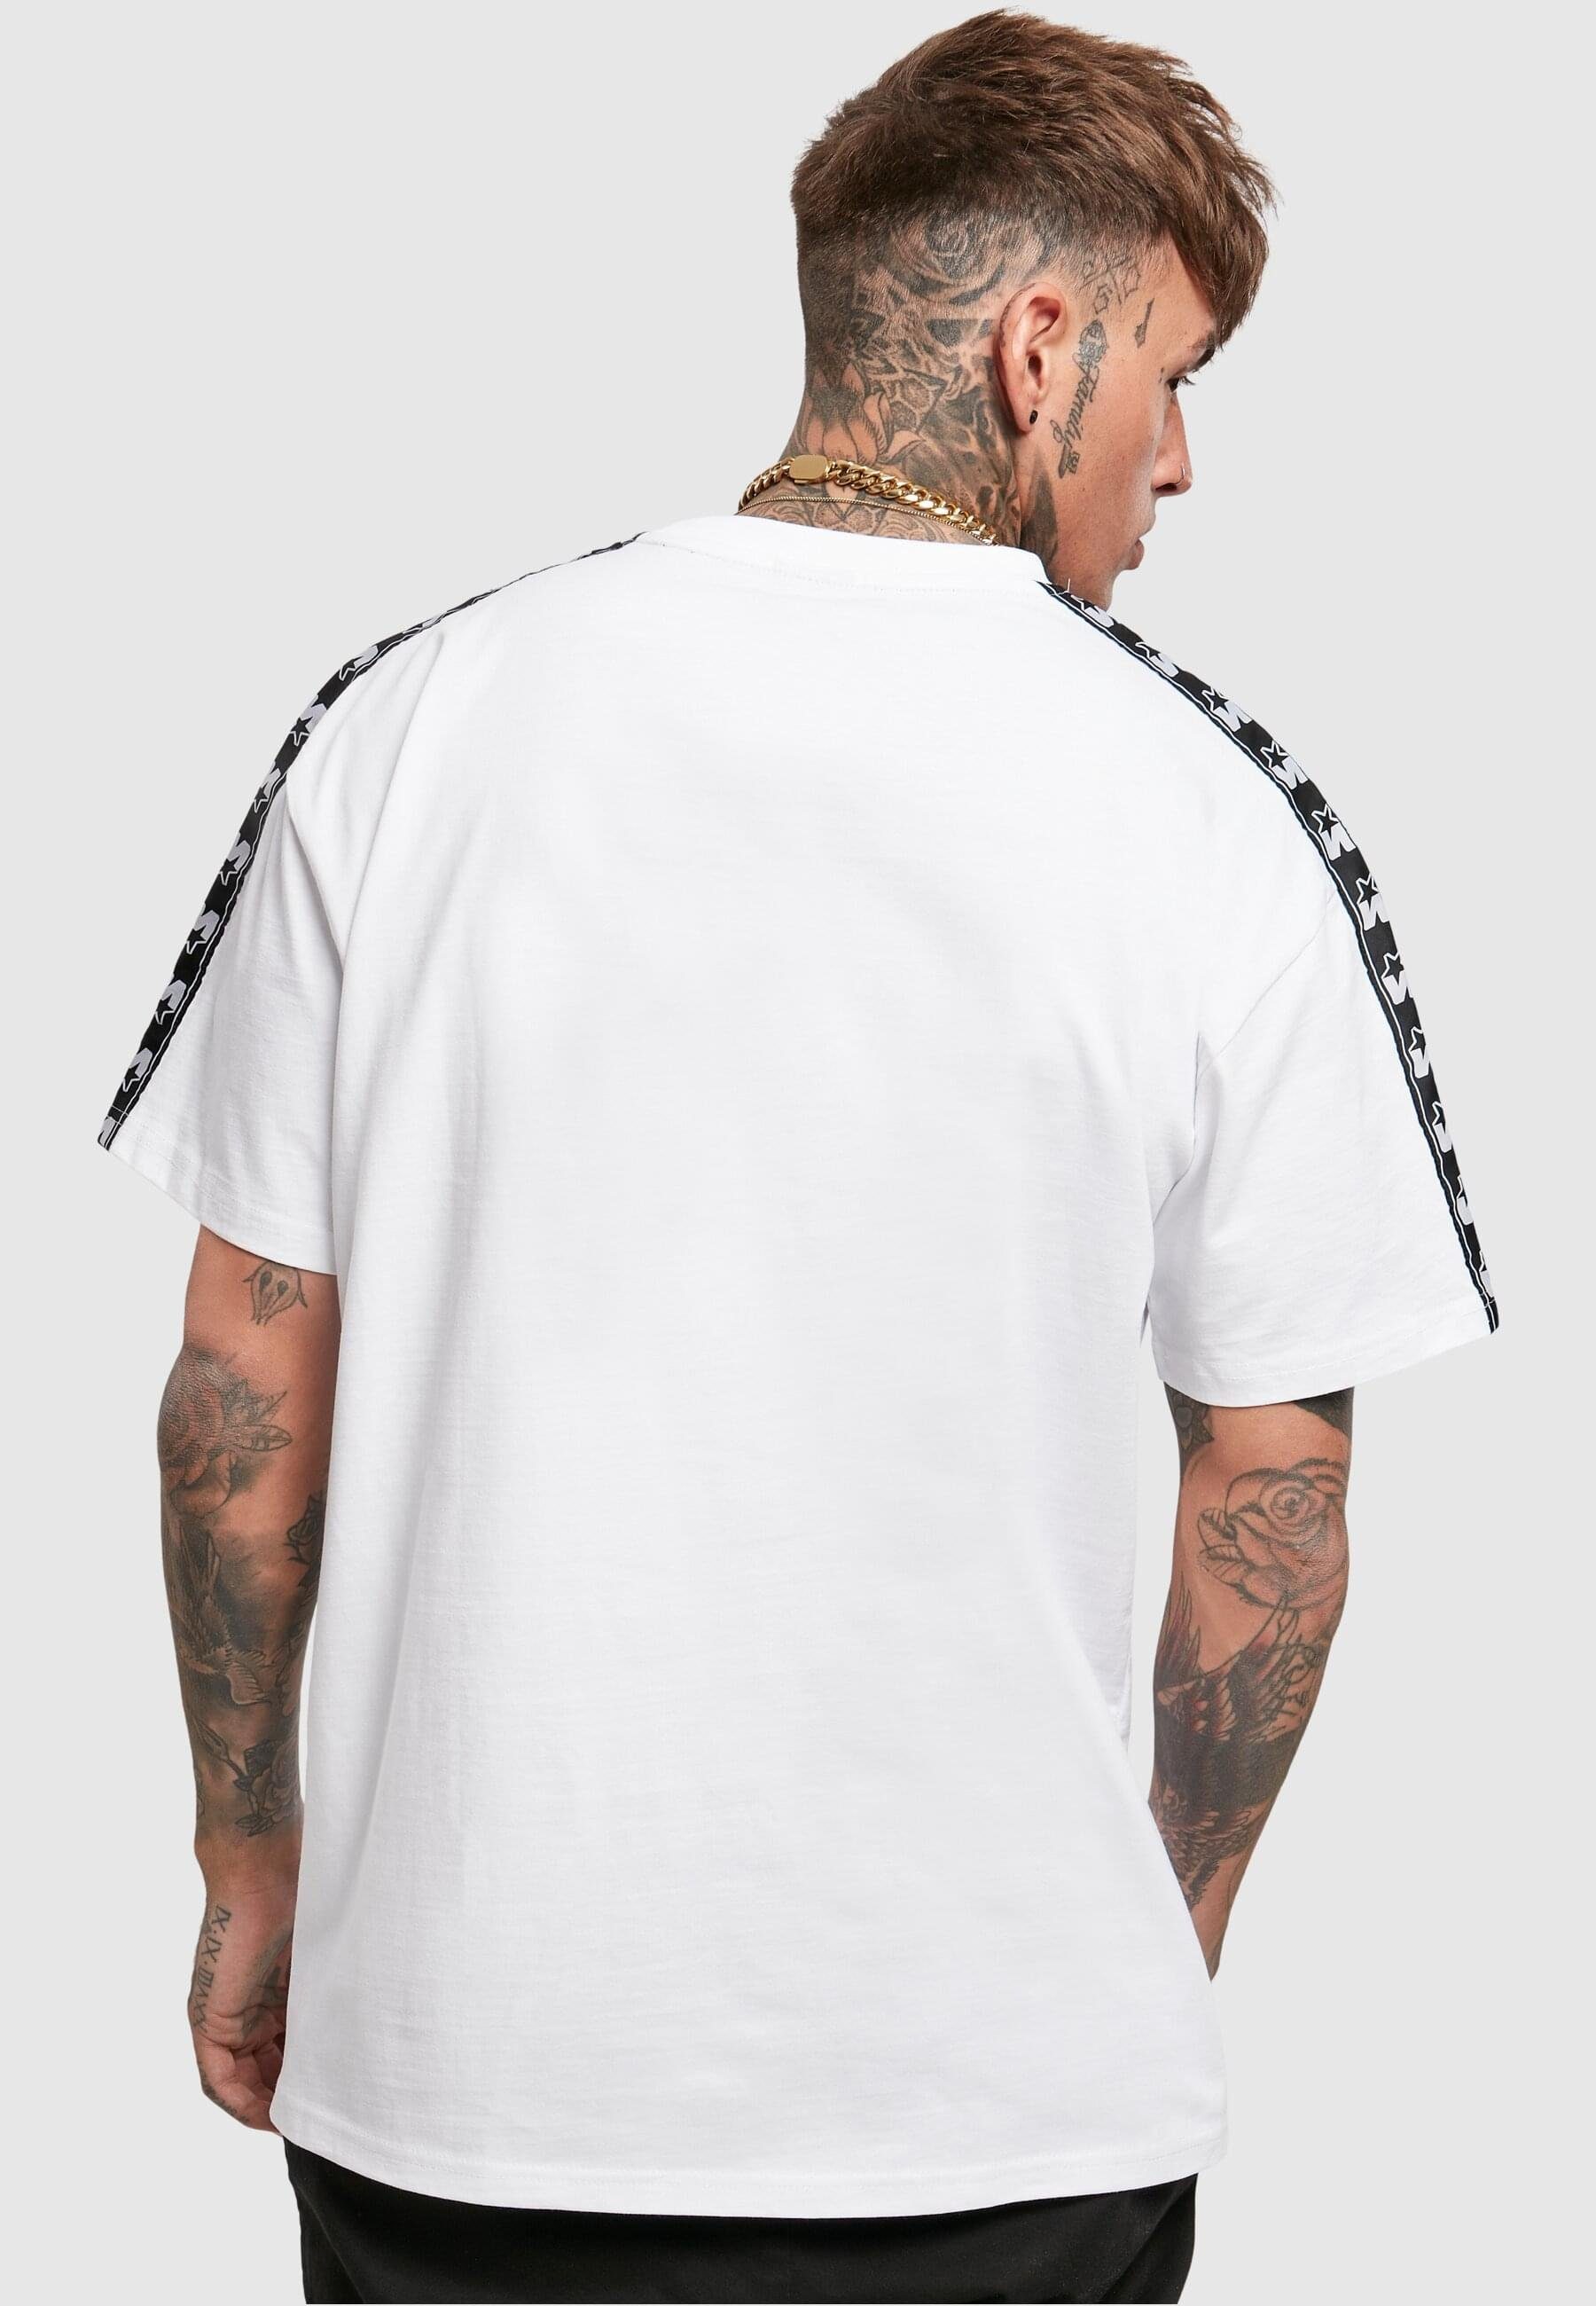 Starter T-Shirt Tee Herren (1-tlg) white Starter Logo Taped